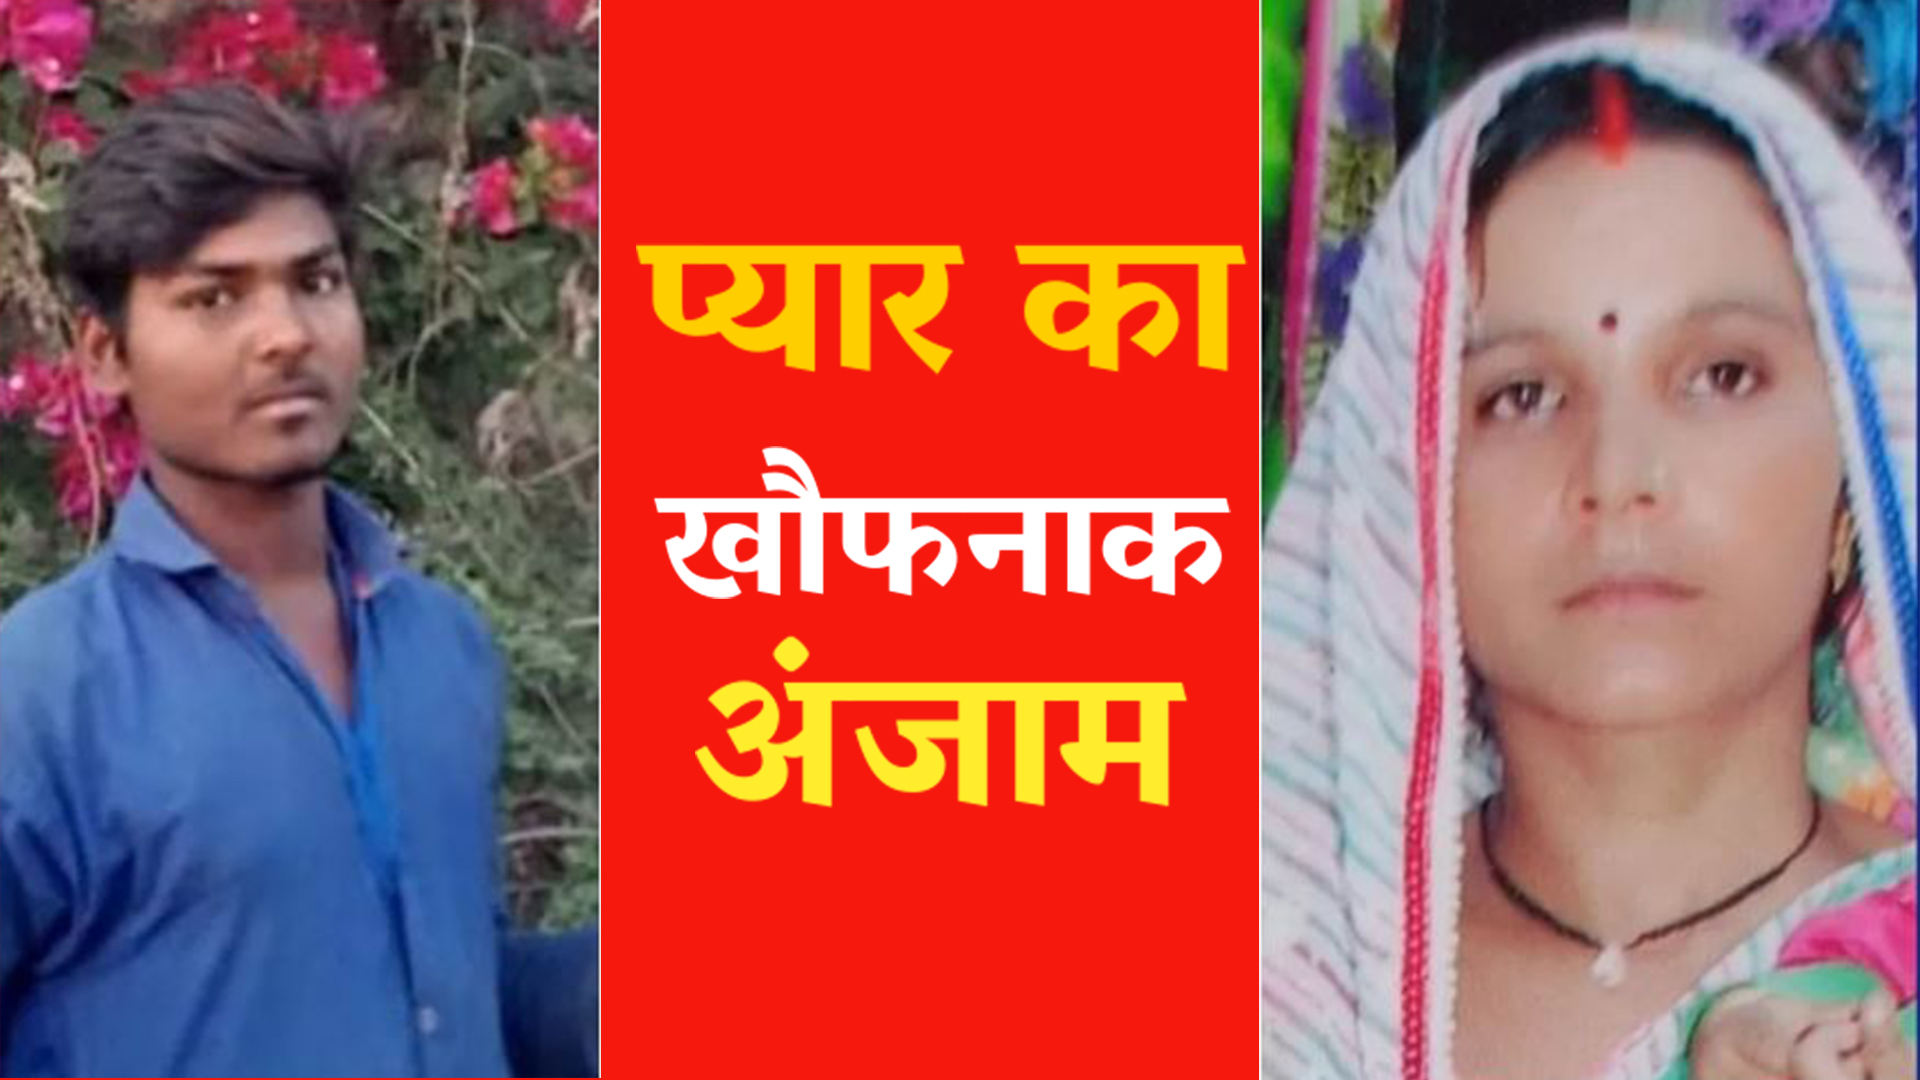 Pratapgarh News :34 वर्षीय विधवा भाभी ने 19 वर्षीय देवर के साथ लगाई फांसी, 12 साल पहले बदला था धर्म